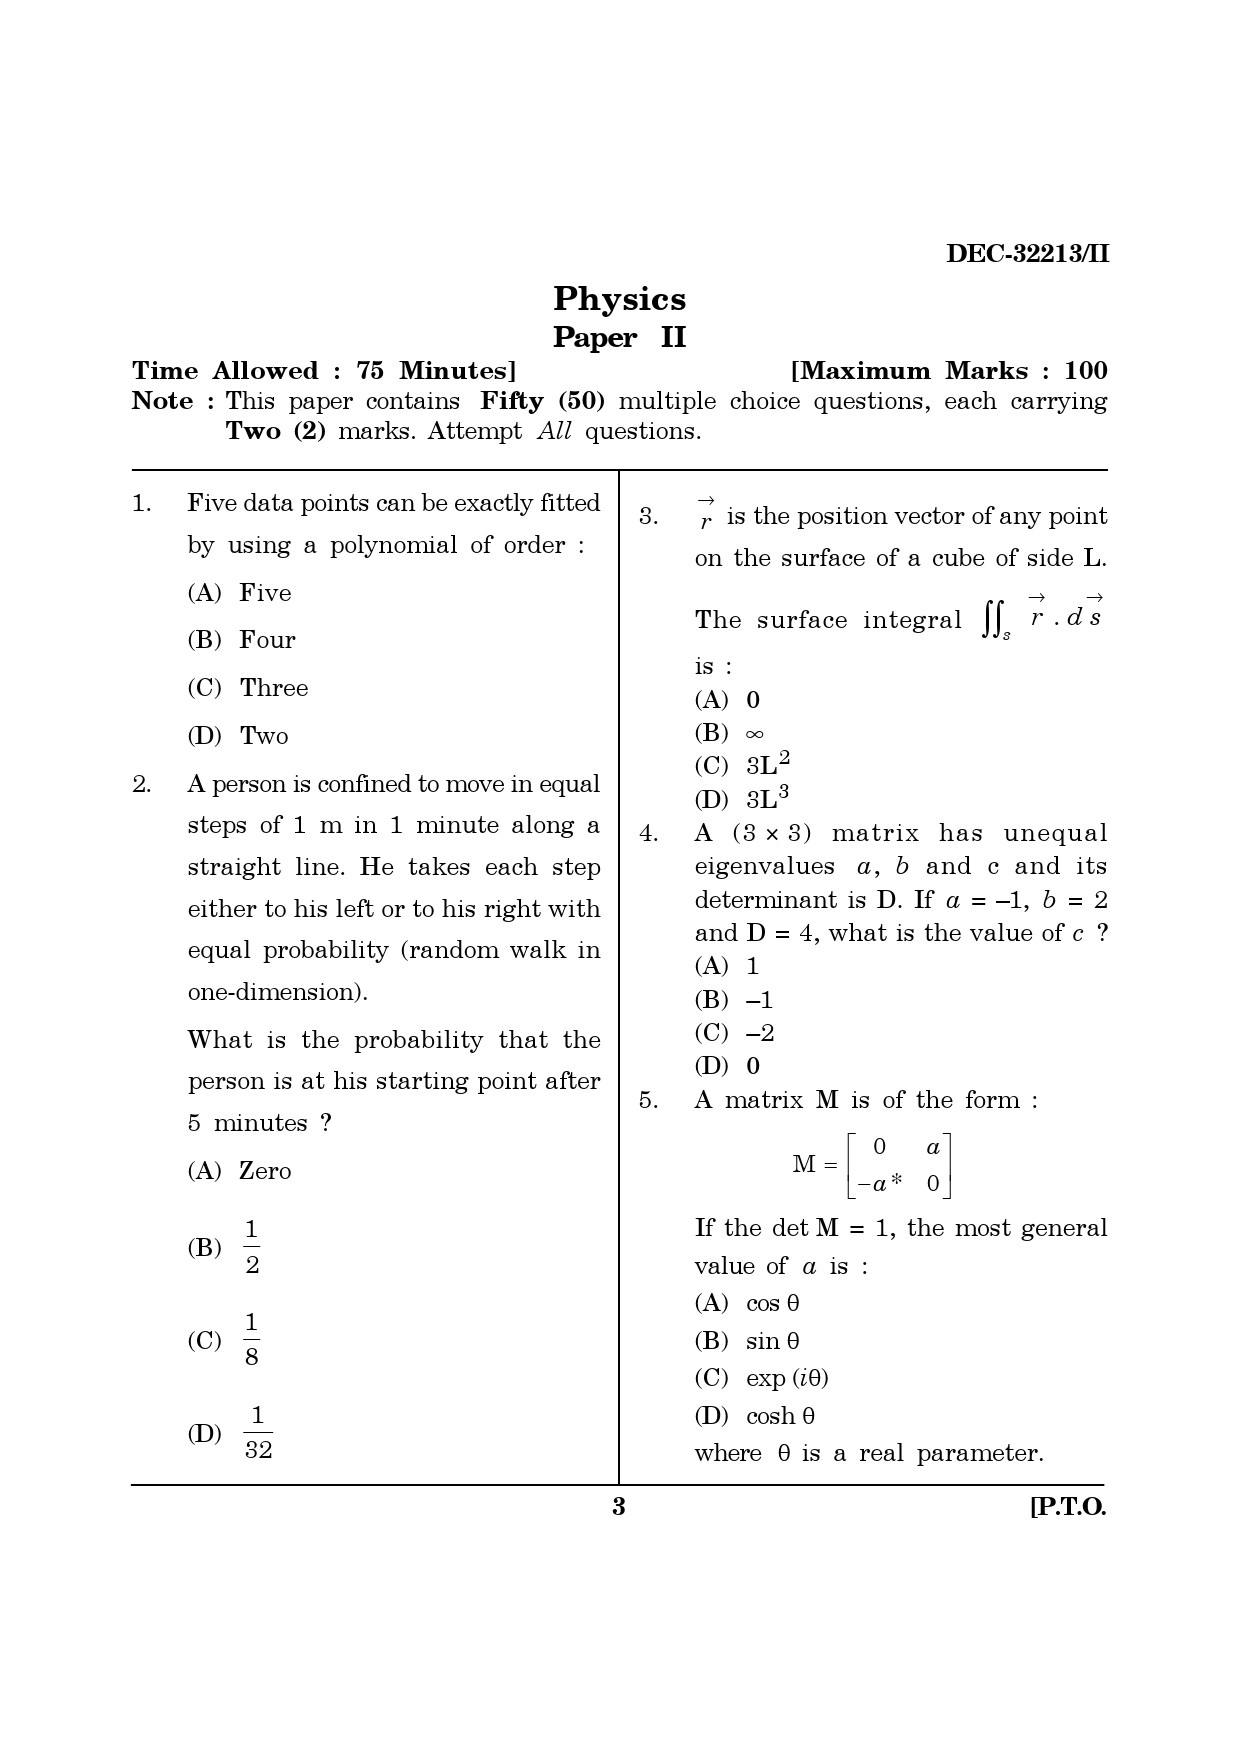 Maharashtra SET Physics Question Paper II December 2013 2